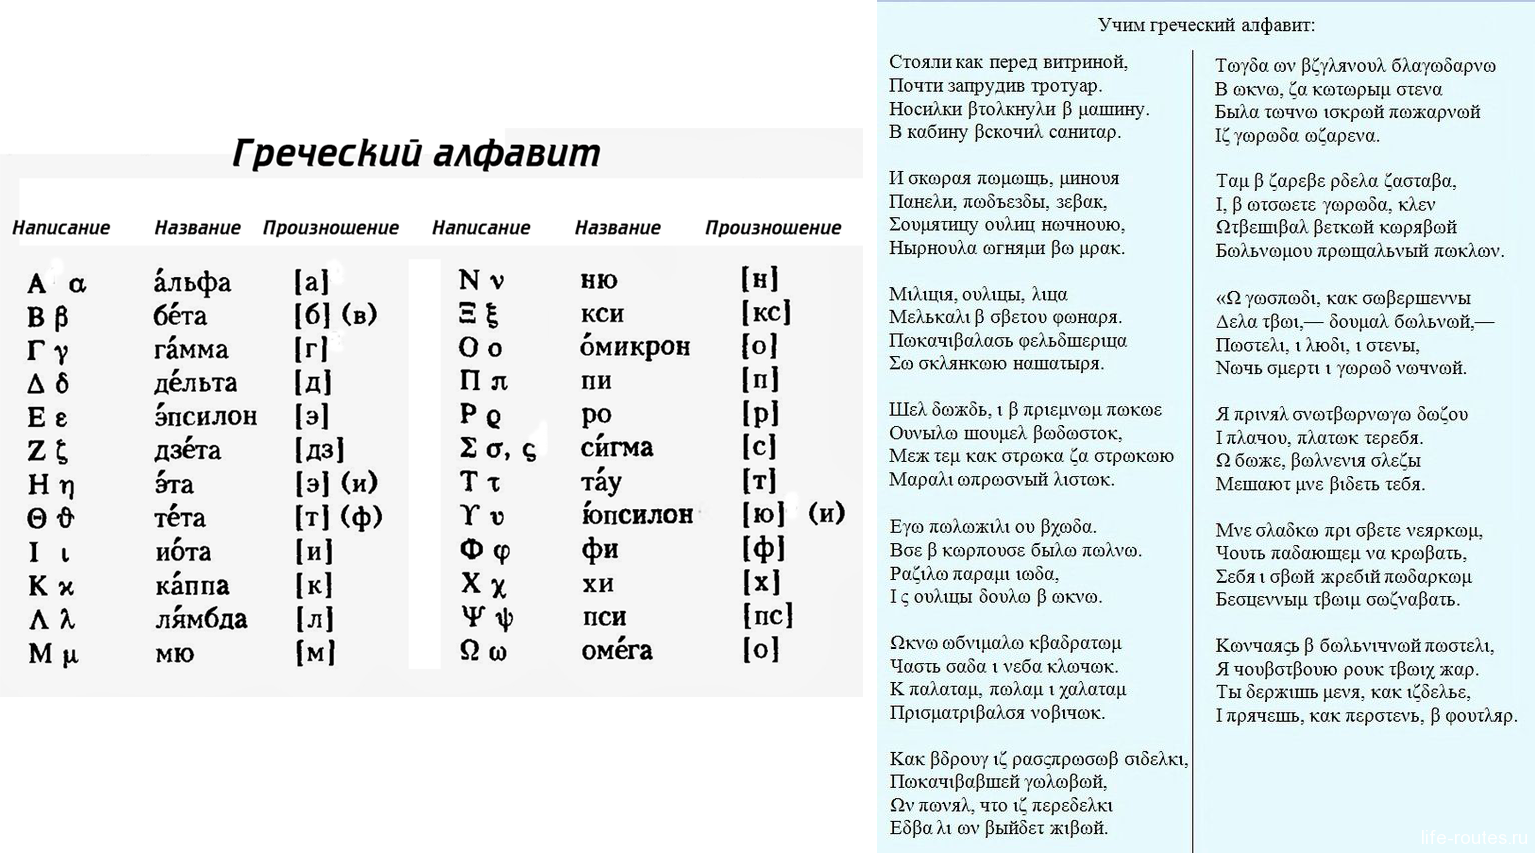 Учить язык фразами. Греческий алфавит с транскрипцией. Греческий язык учить с нуля. Произношение букв греческого алфавита. Произношение греческих слов.